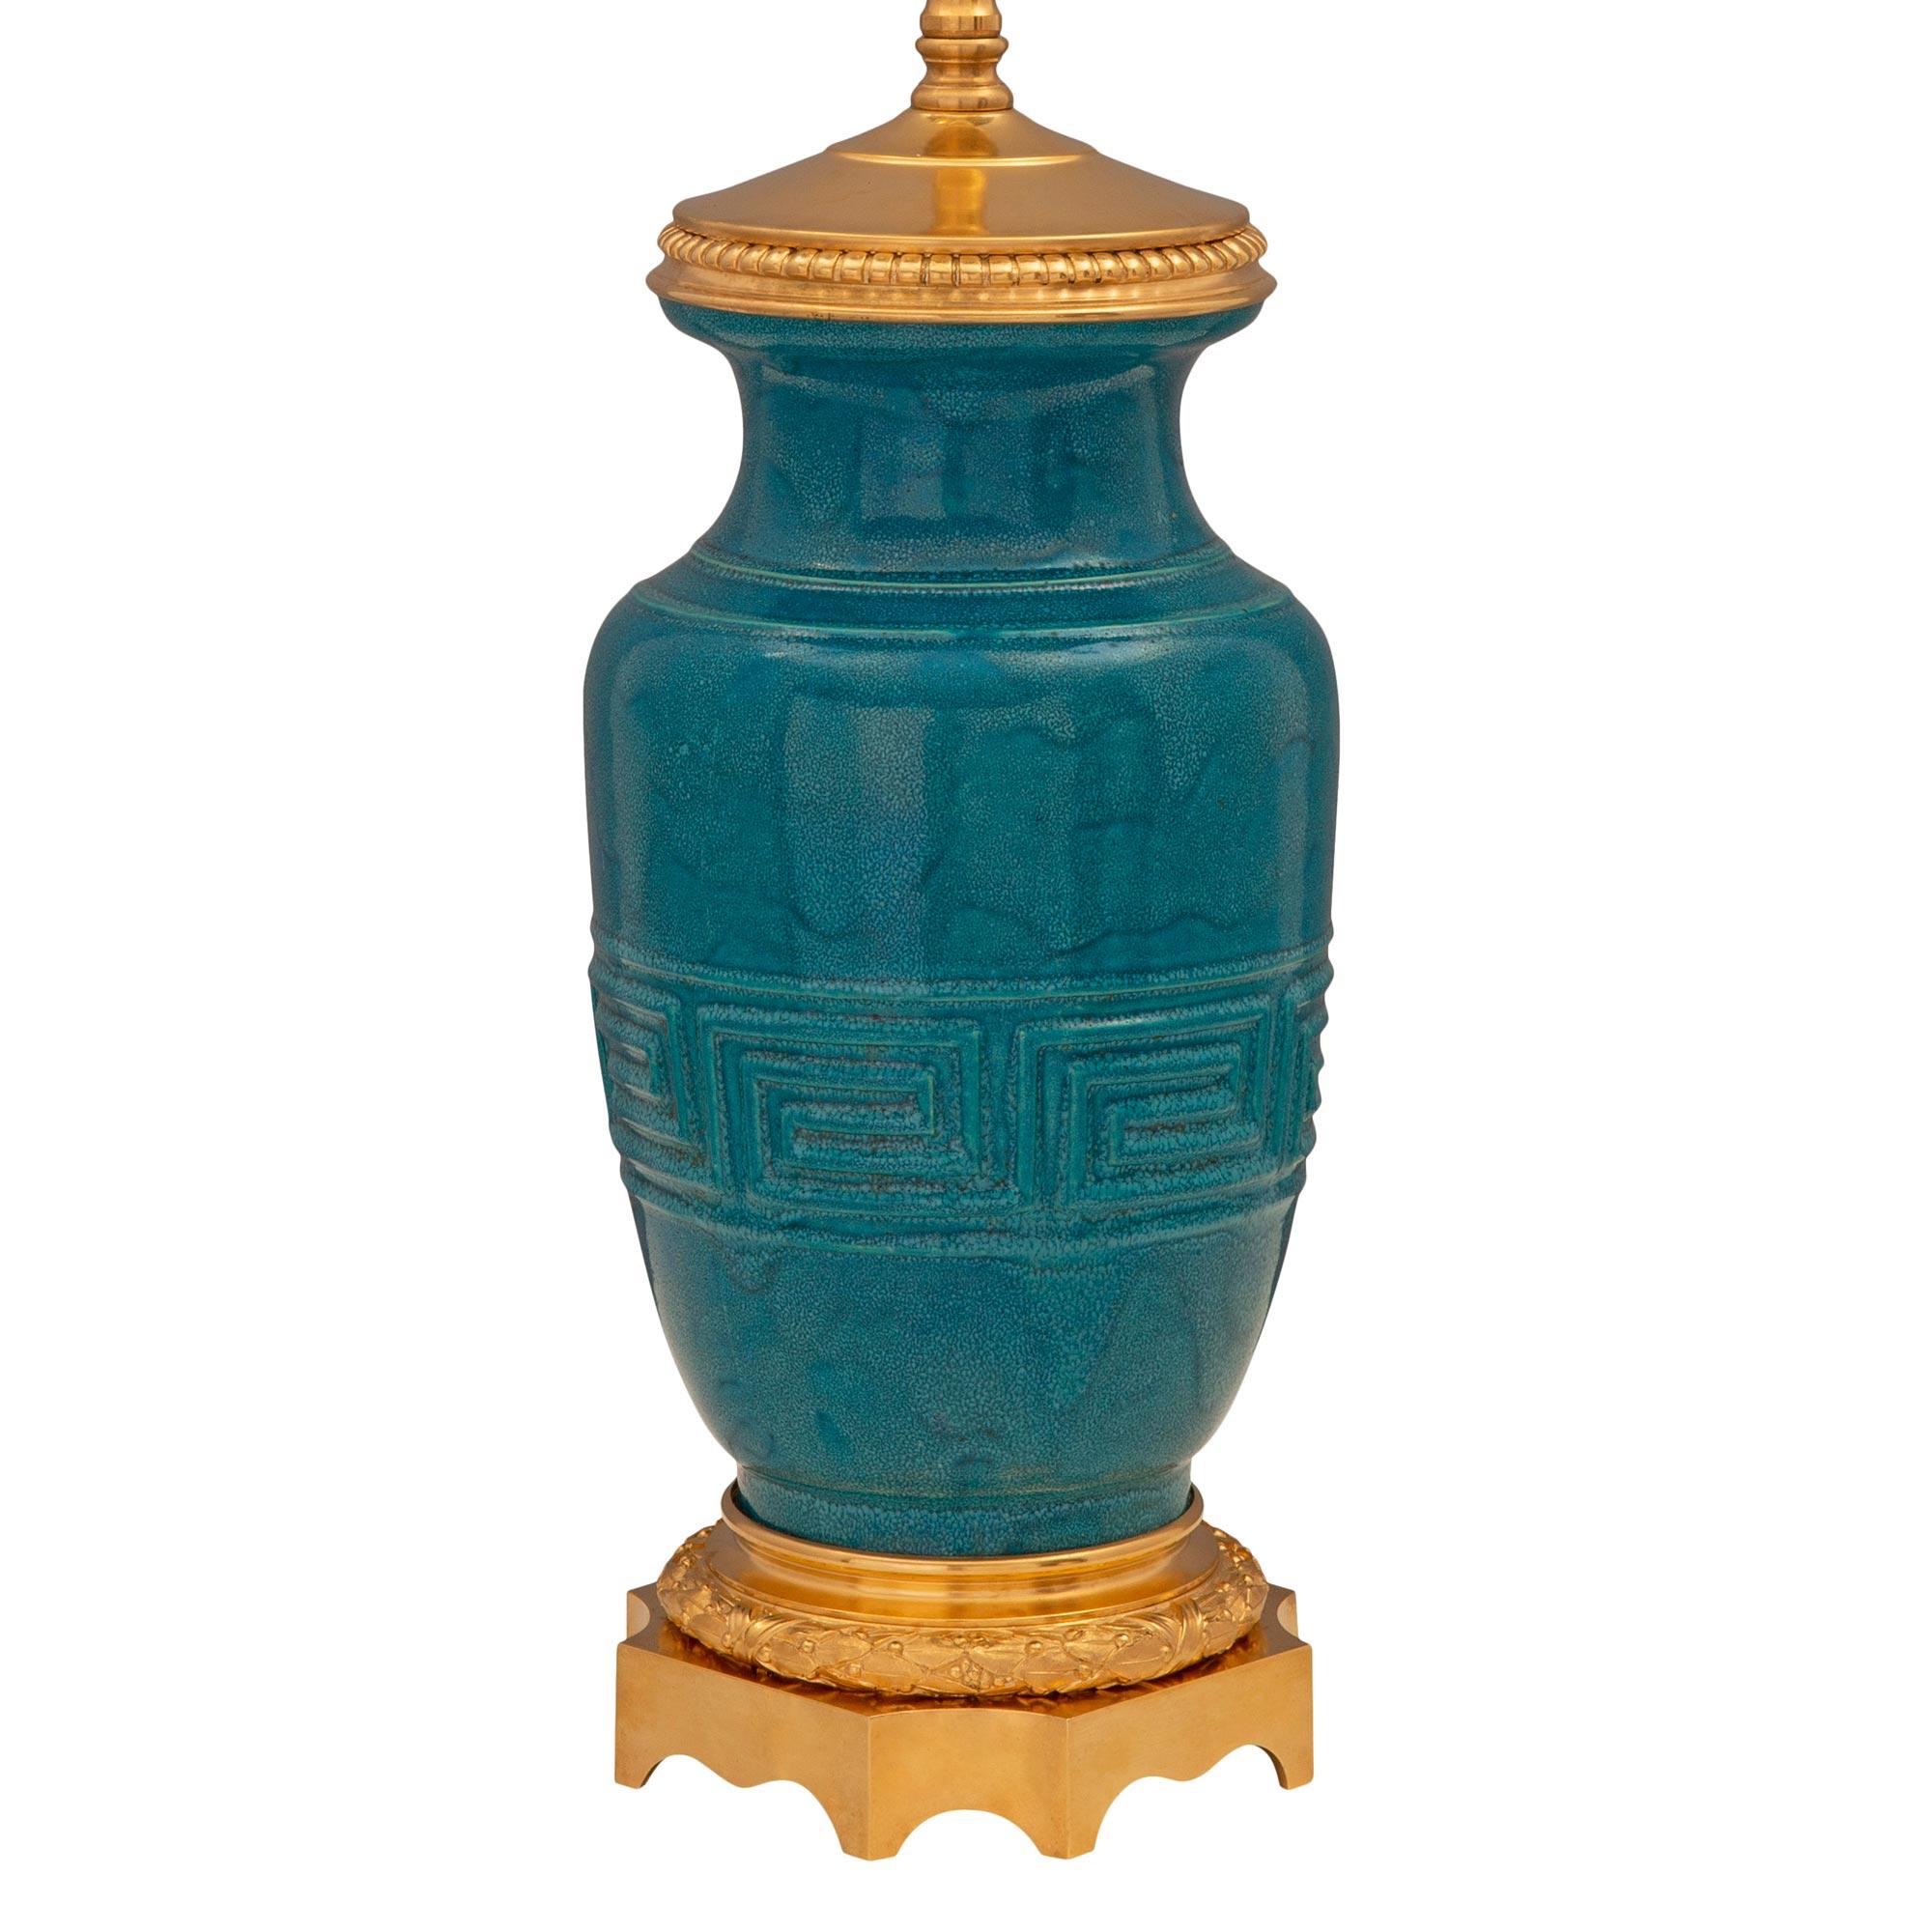 Une paire exceptionnelle de lampes en porcelaine émaillée bleu sarcelle et en bronze doré, de fabrication française et asiatique, attribuée à Théodore Deck. Chaque lampe est surélevée par une élégante base carrée en bronze doré, avec des coins